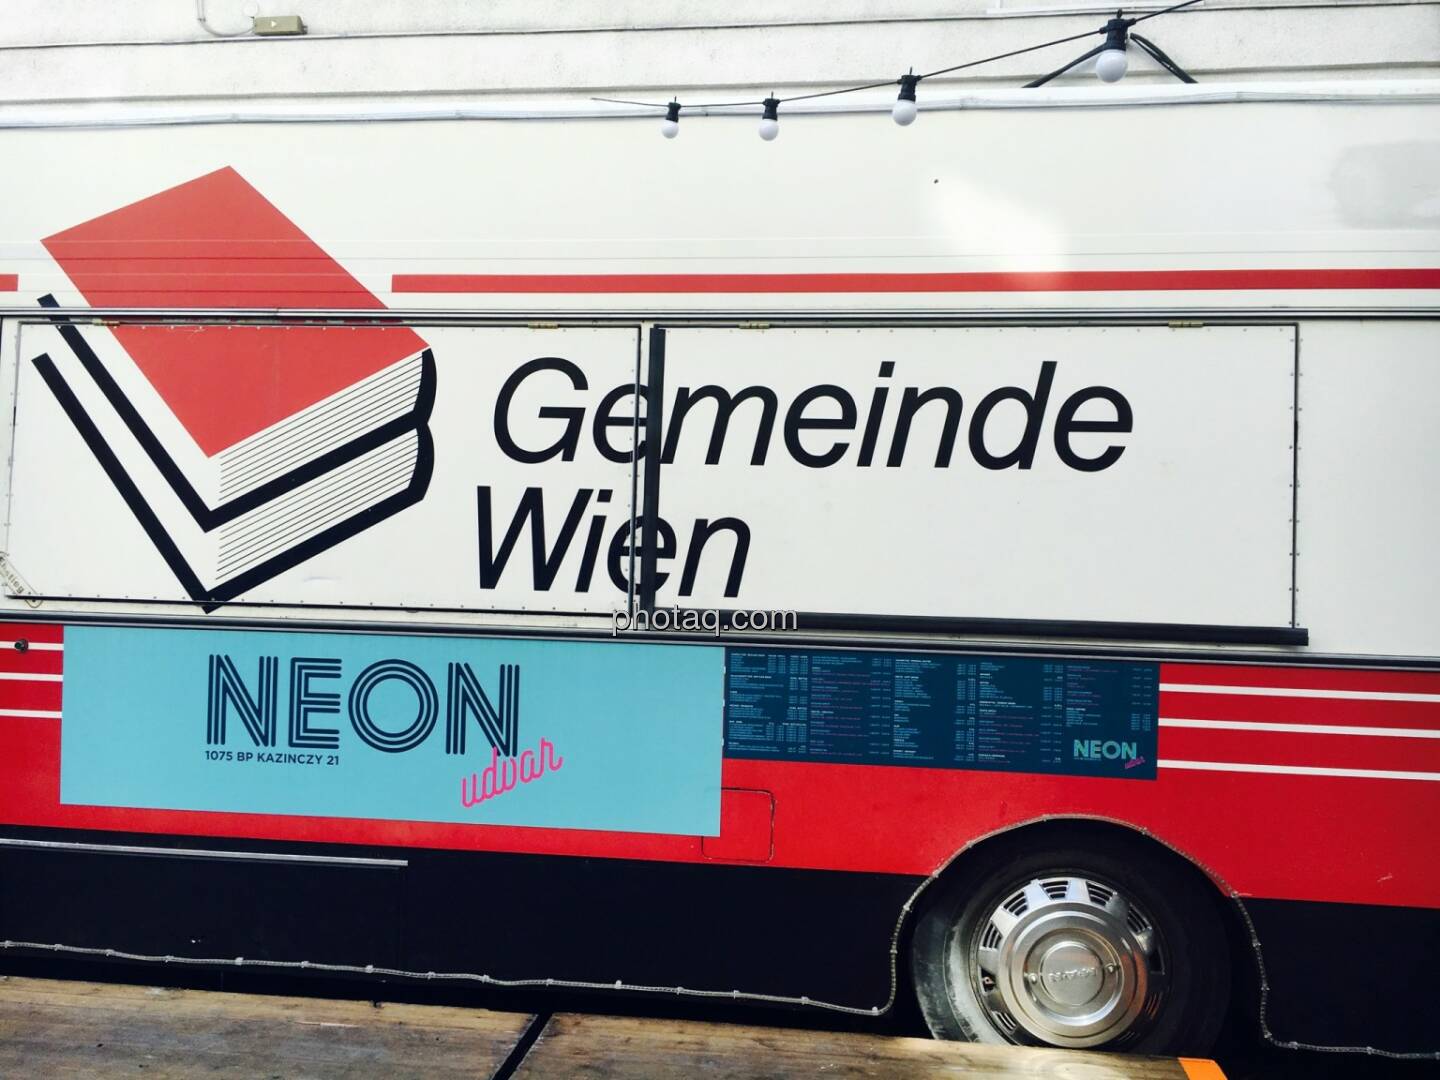 Gemeinde Wien, Neon